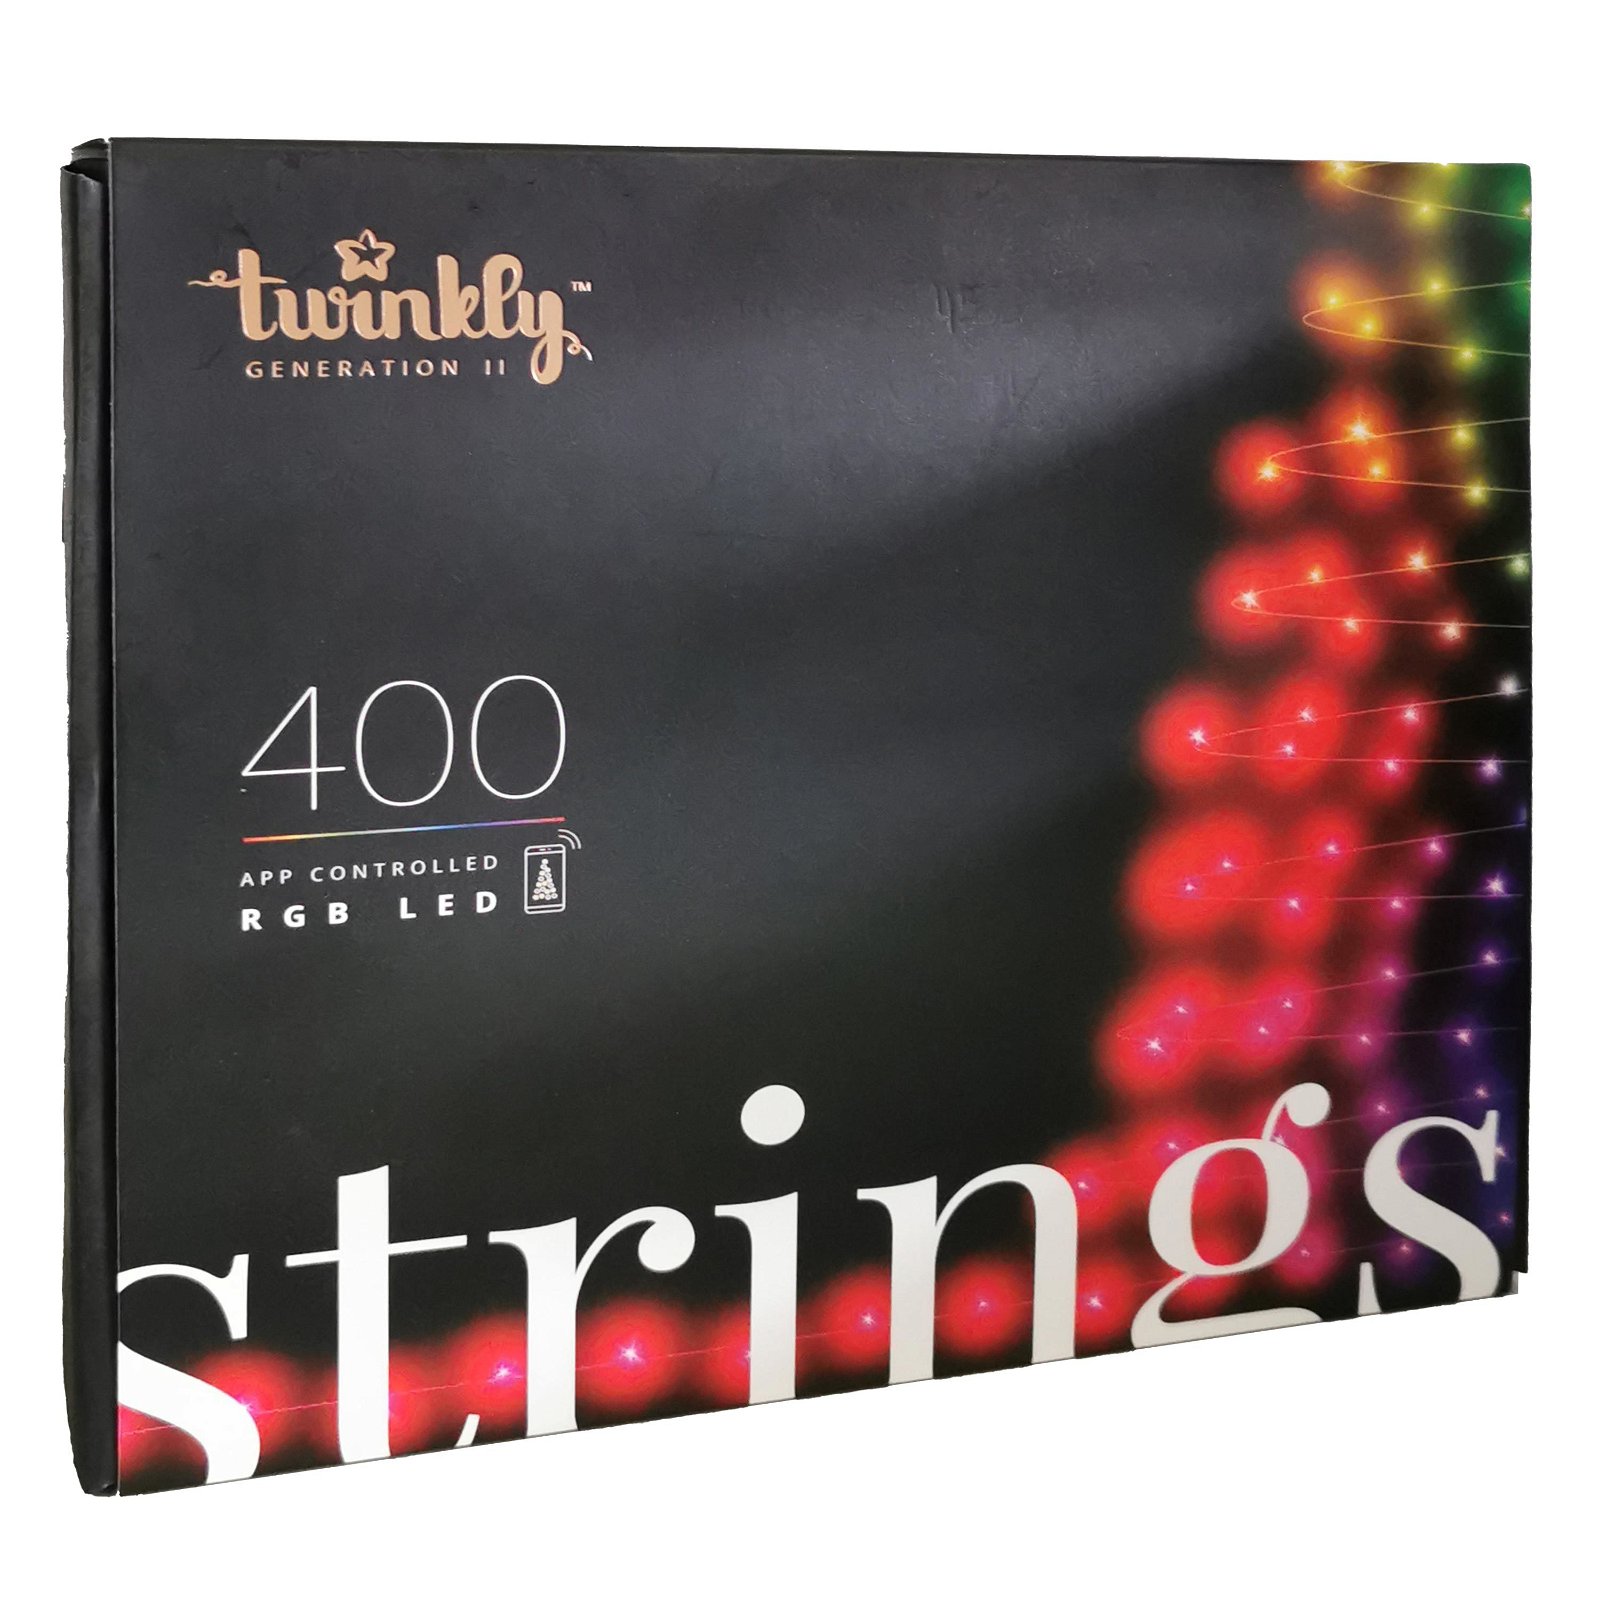 Twinkly LED Lichterkette Strings, 400 LEDs, 32 m, Steuerung via App